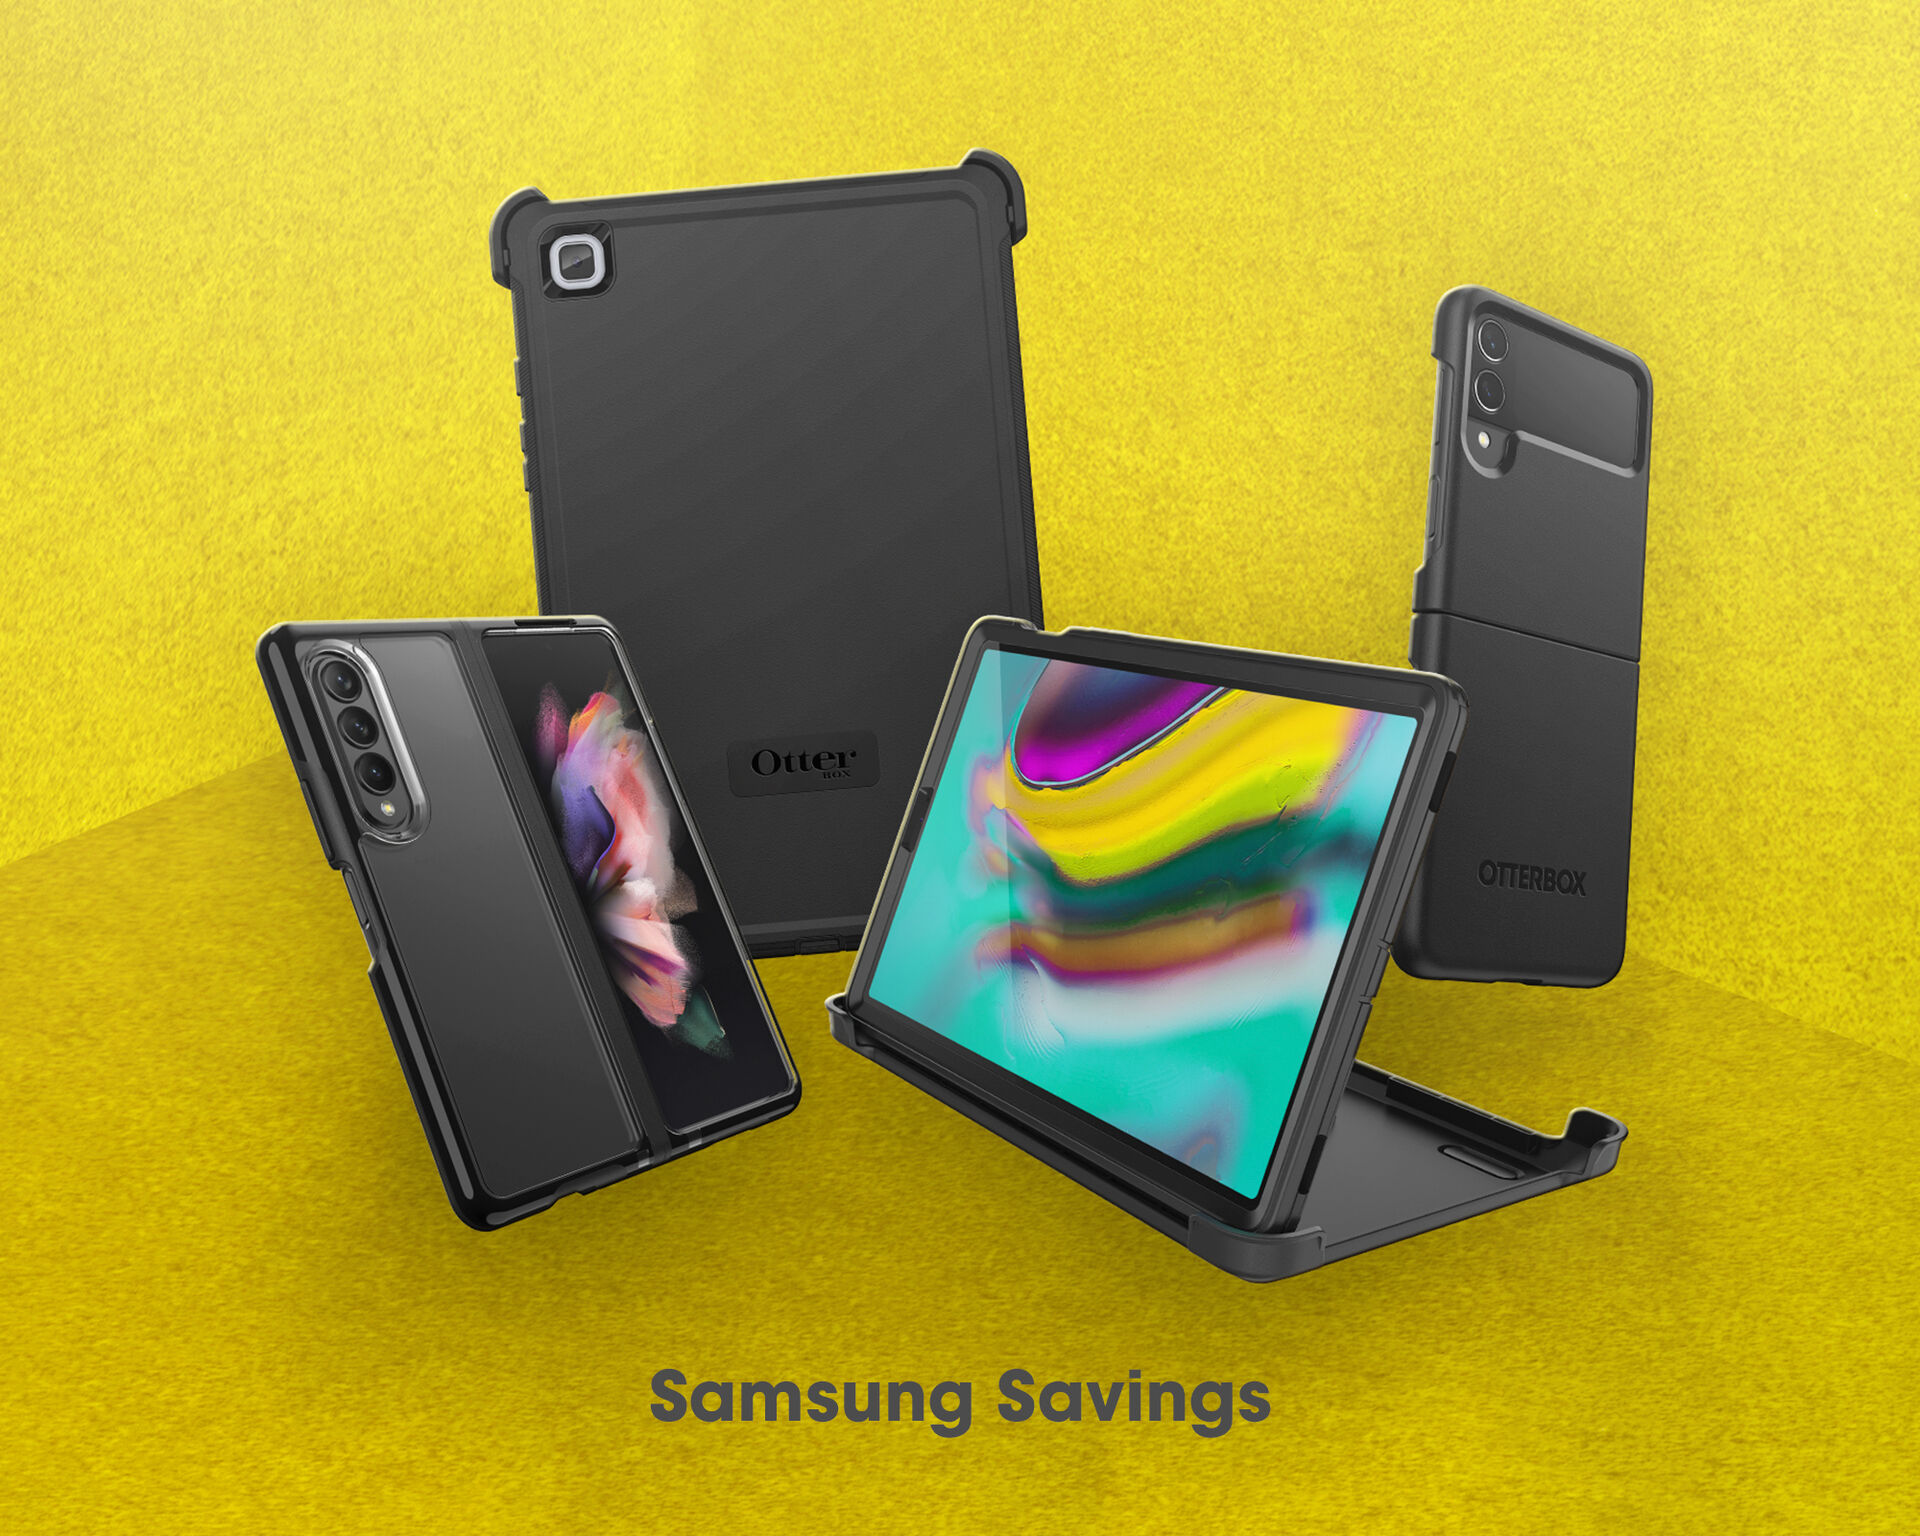 Samsung Savings